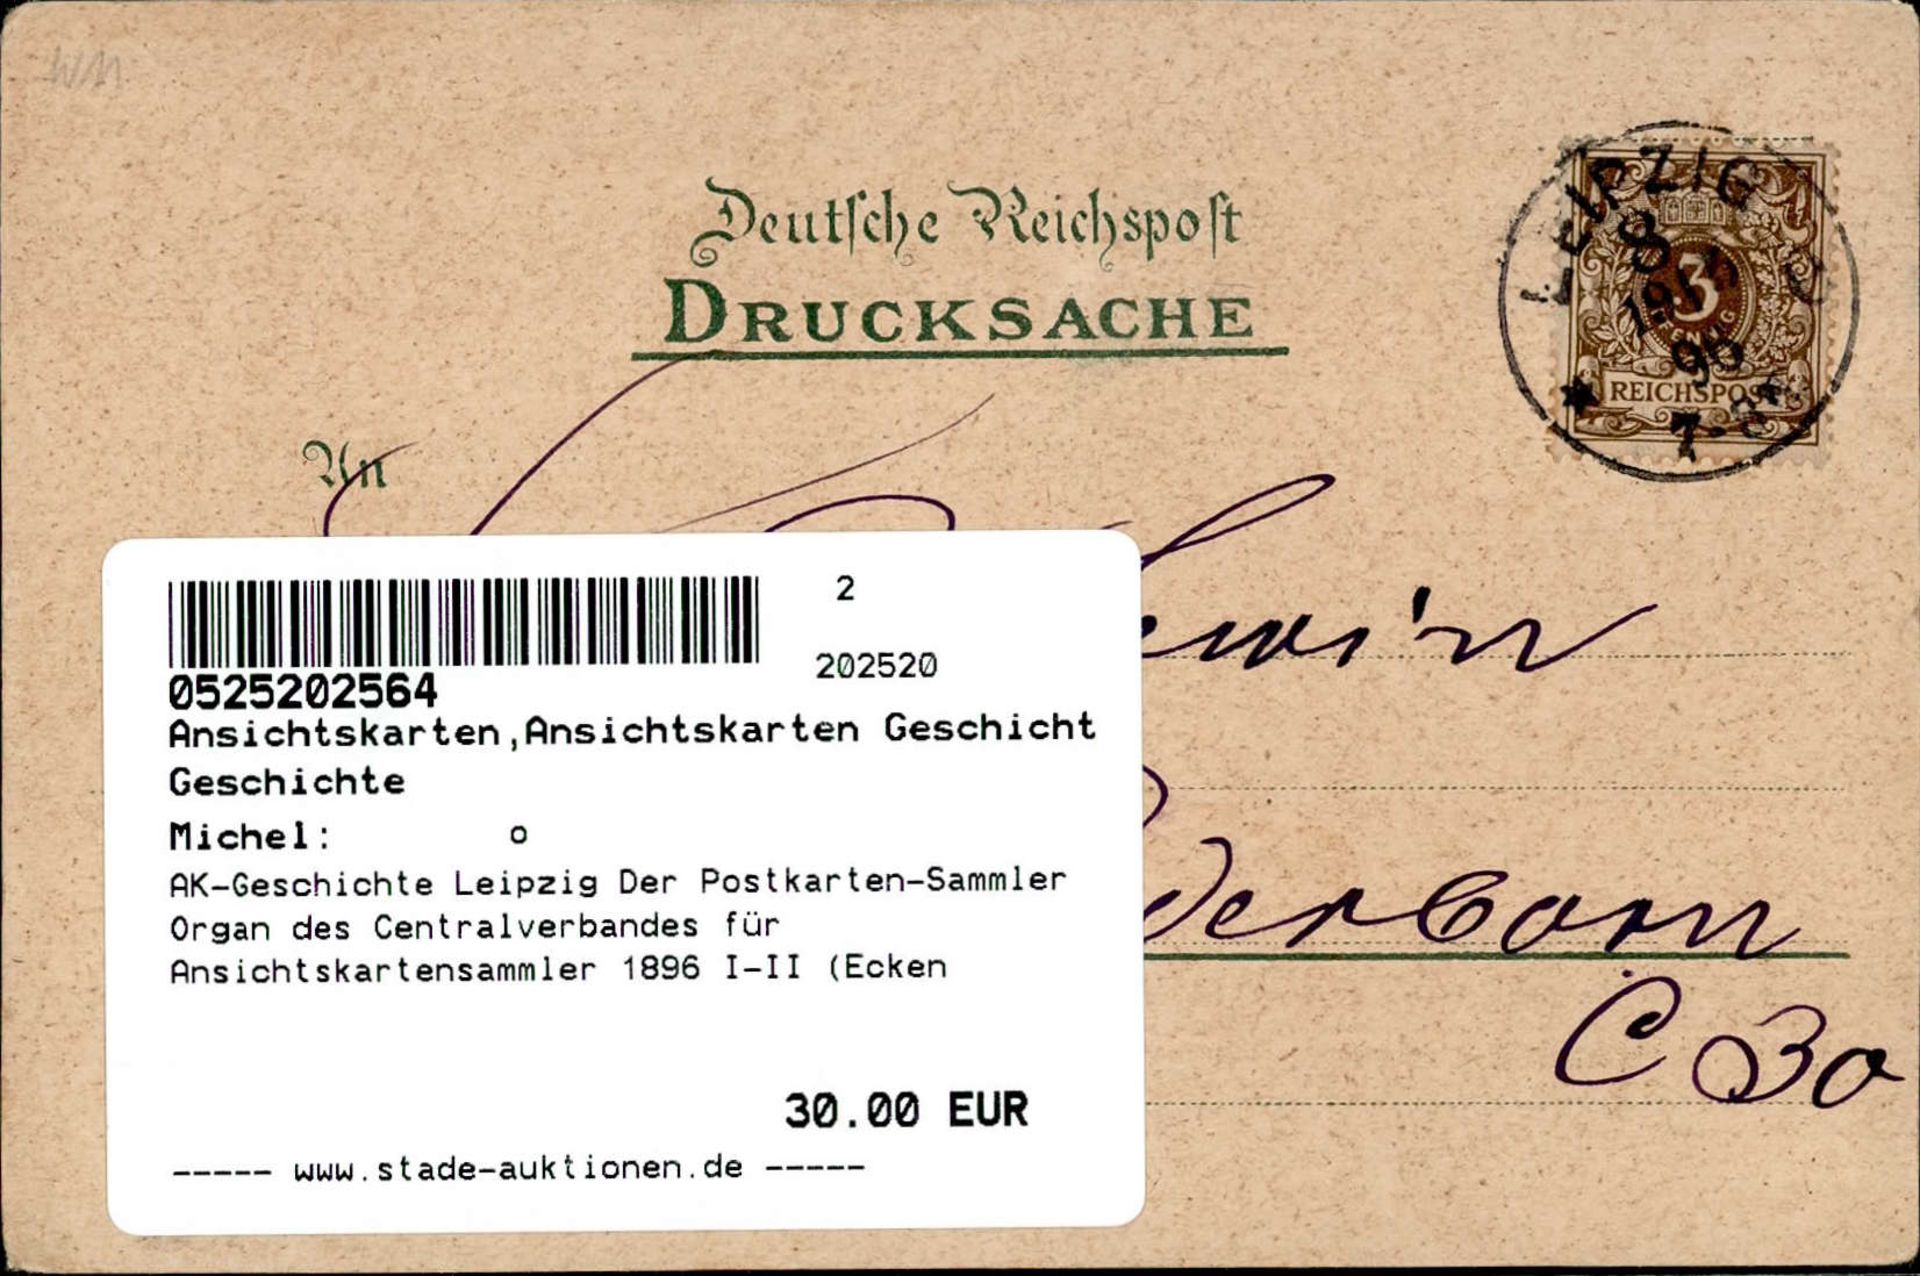 AK-Geschichte Leipzig Der Postkarten-Sammler Organ des Centralverbandes für Ansichtskartensammler - Image 2 of 2